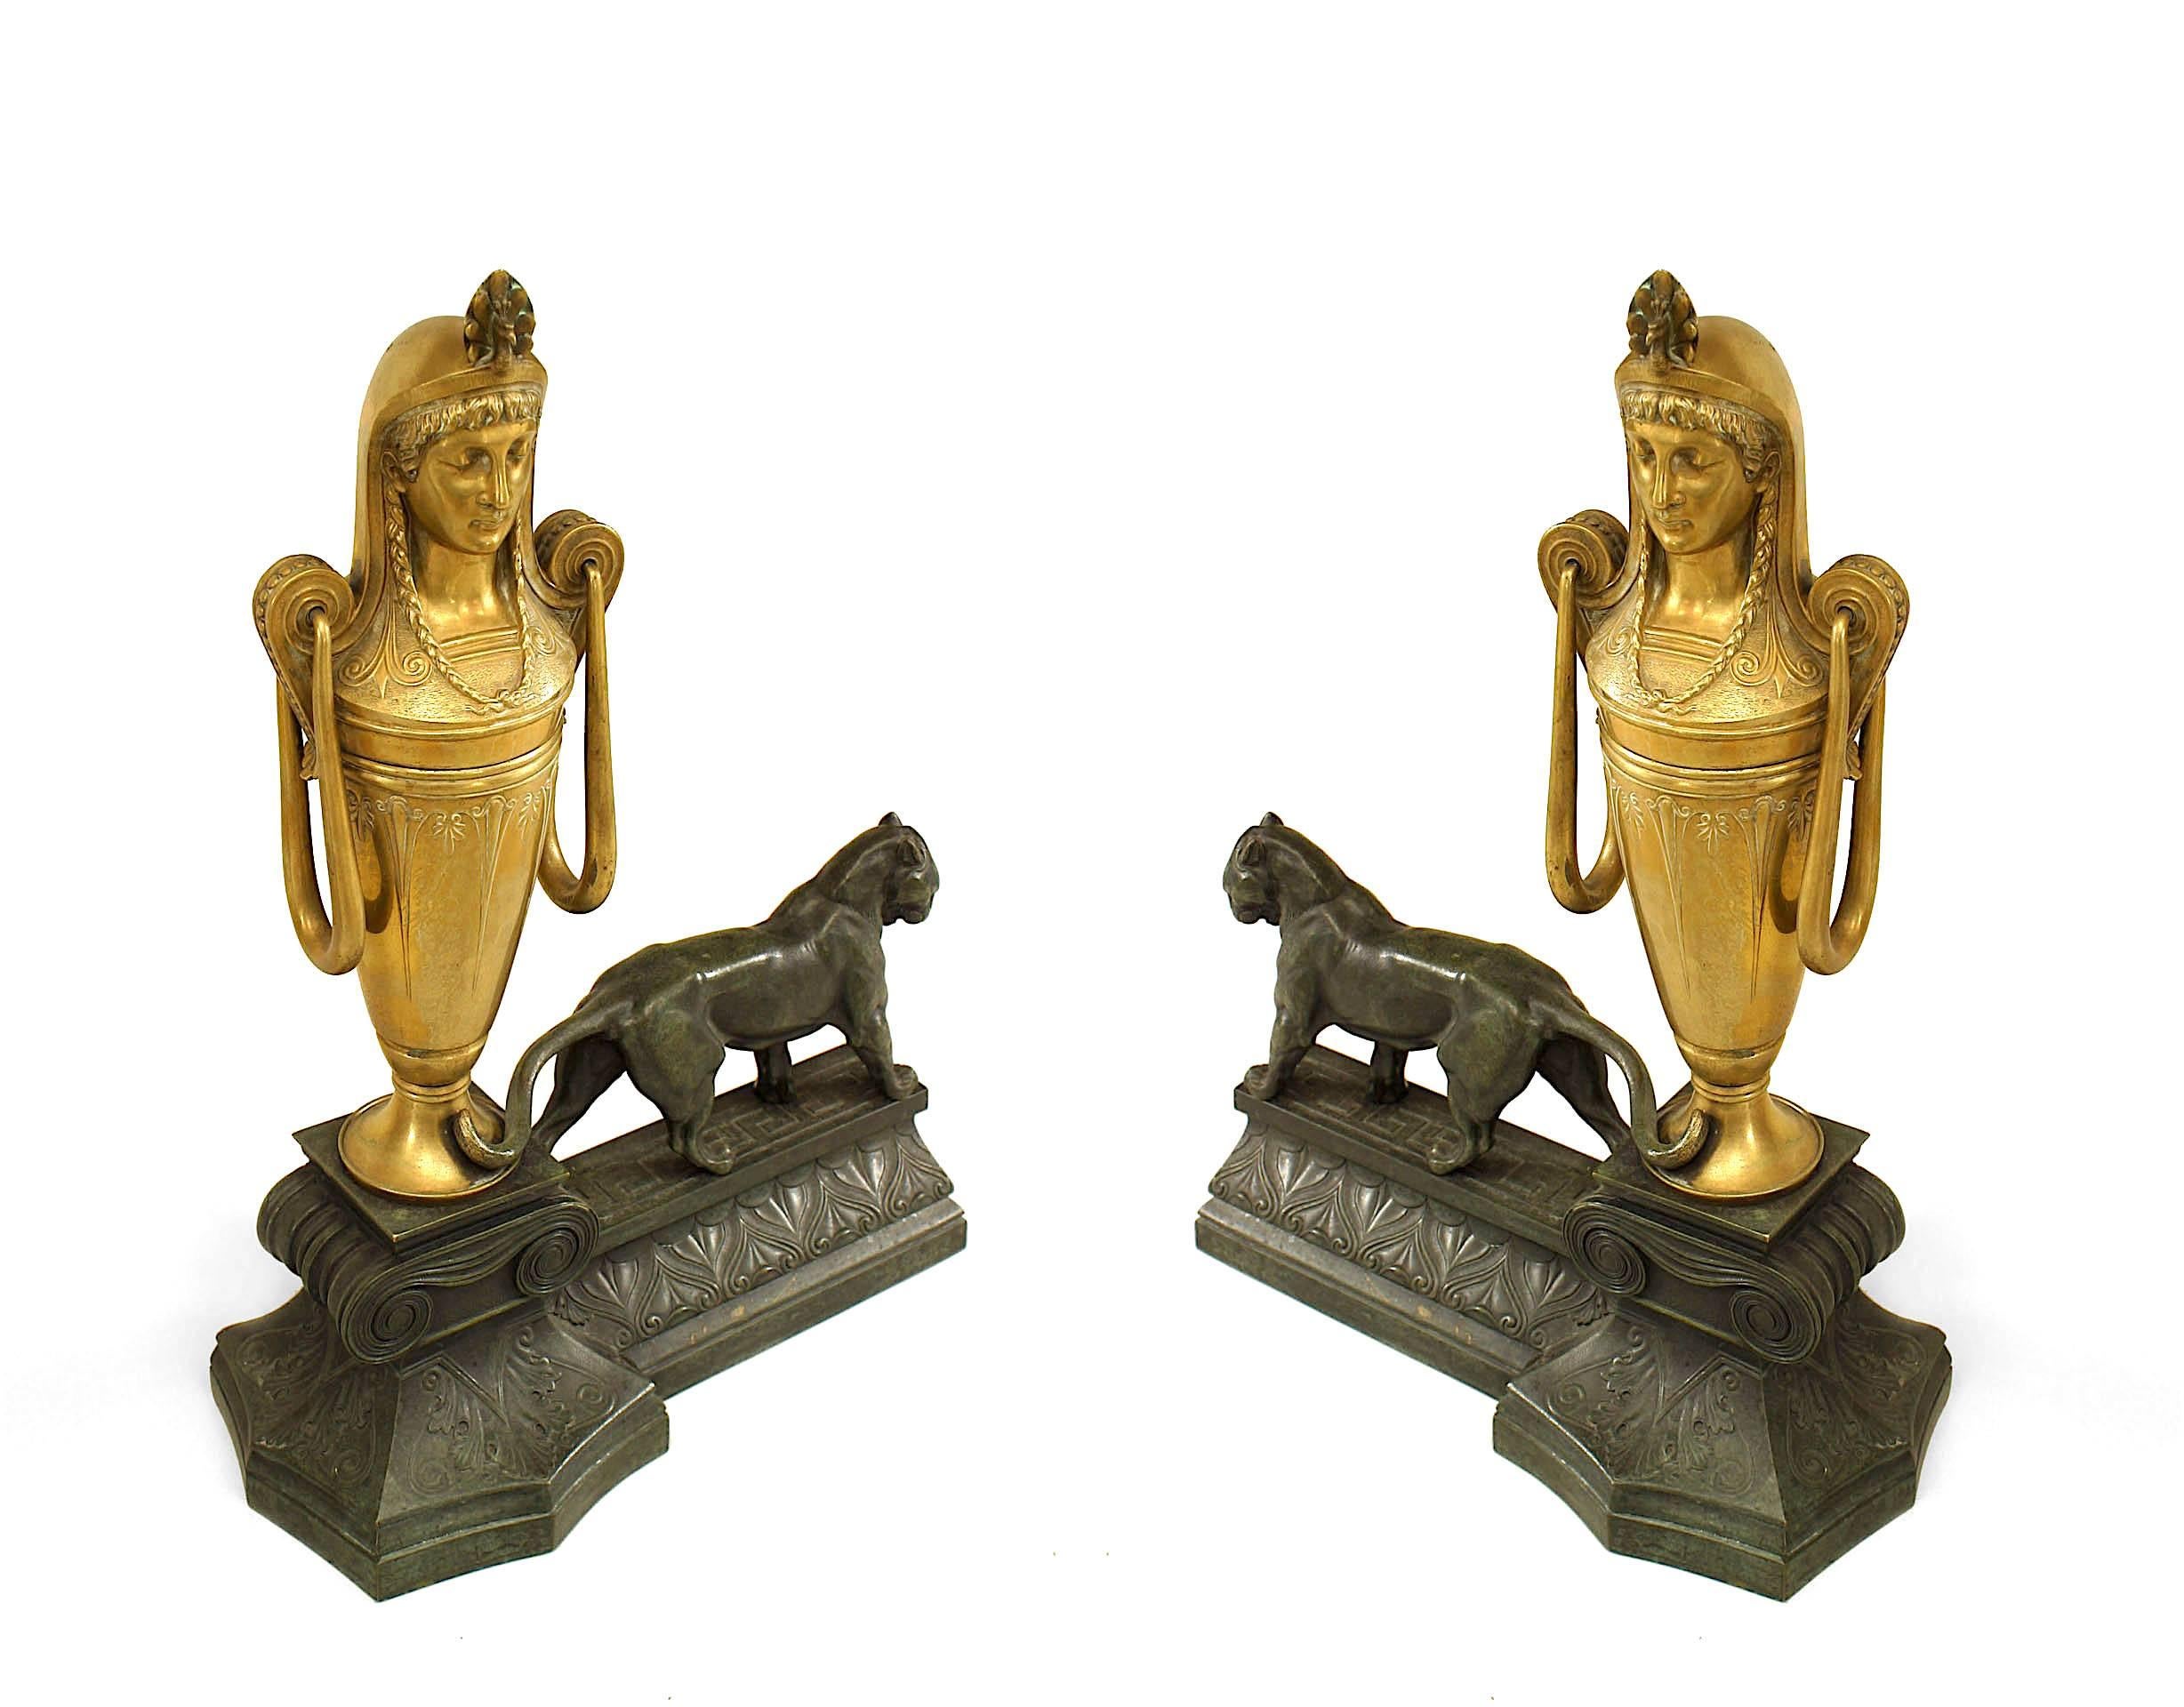 Paire de chenets en bronze de style Empire français (milieu du 19e siècle) avec une panthère debout à côté d'une urne dorée avec une tête égyptienne classique (PRIX DE LA Paire)
